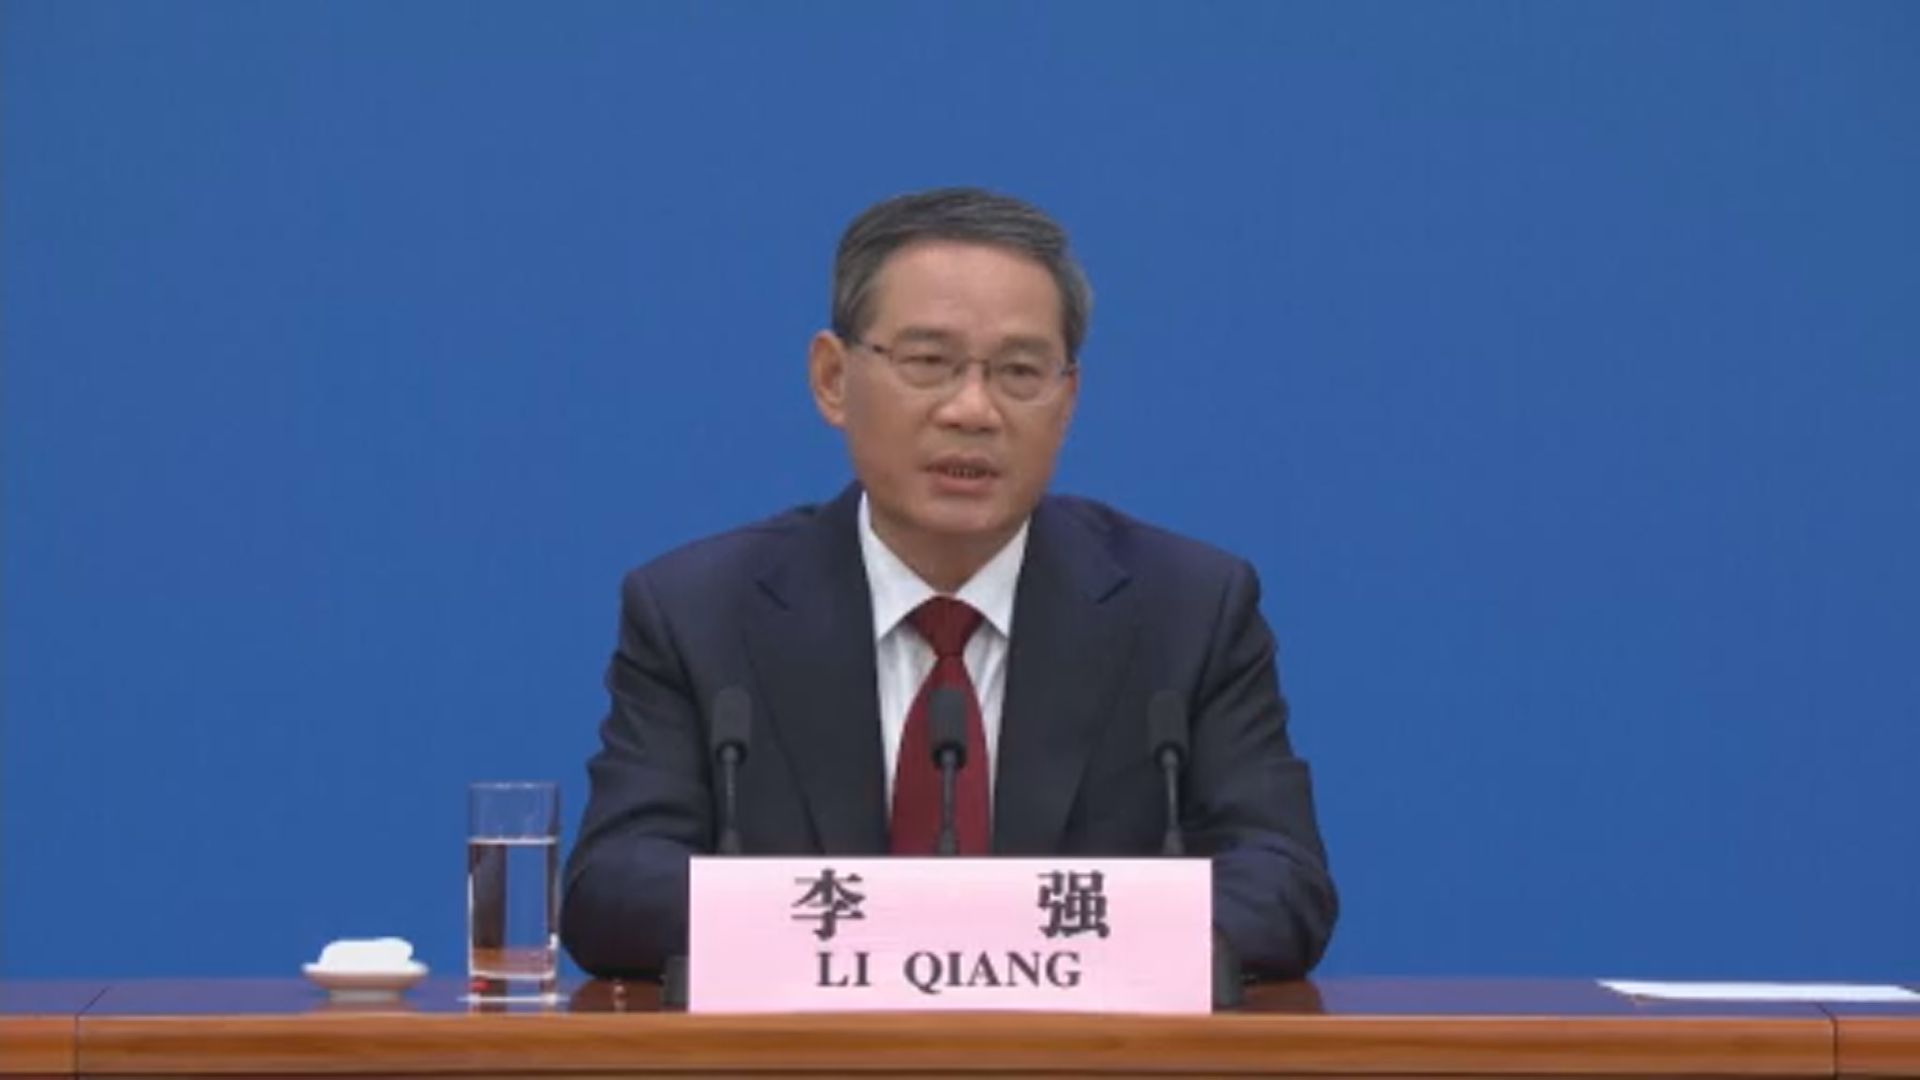 總理李強下周將出席東亞合作領導人系列會議